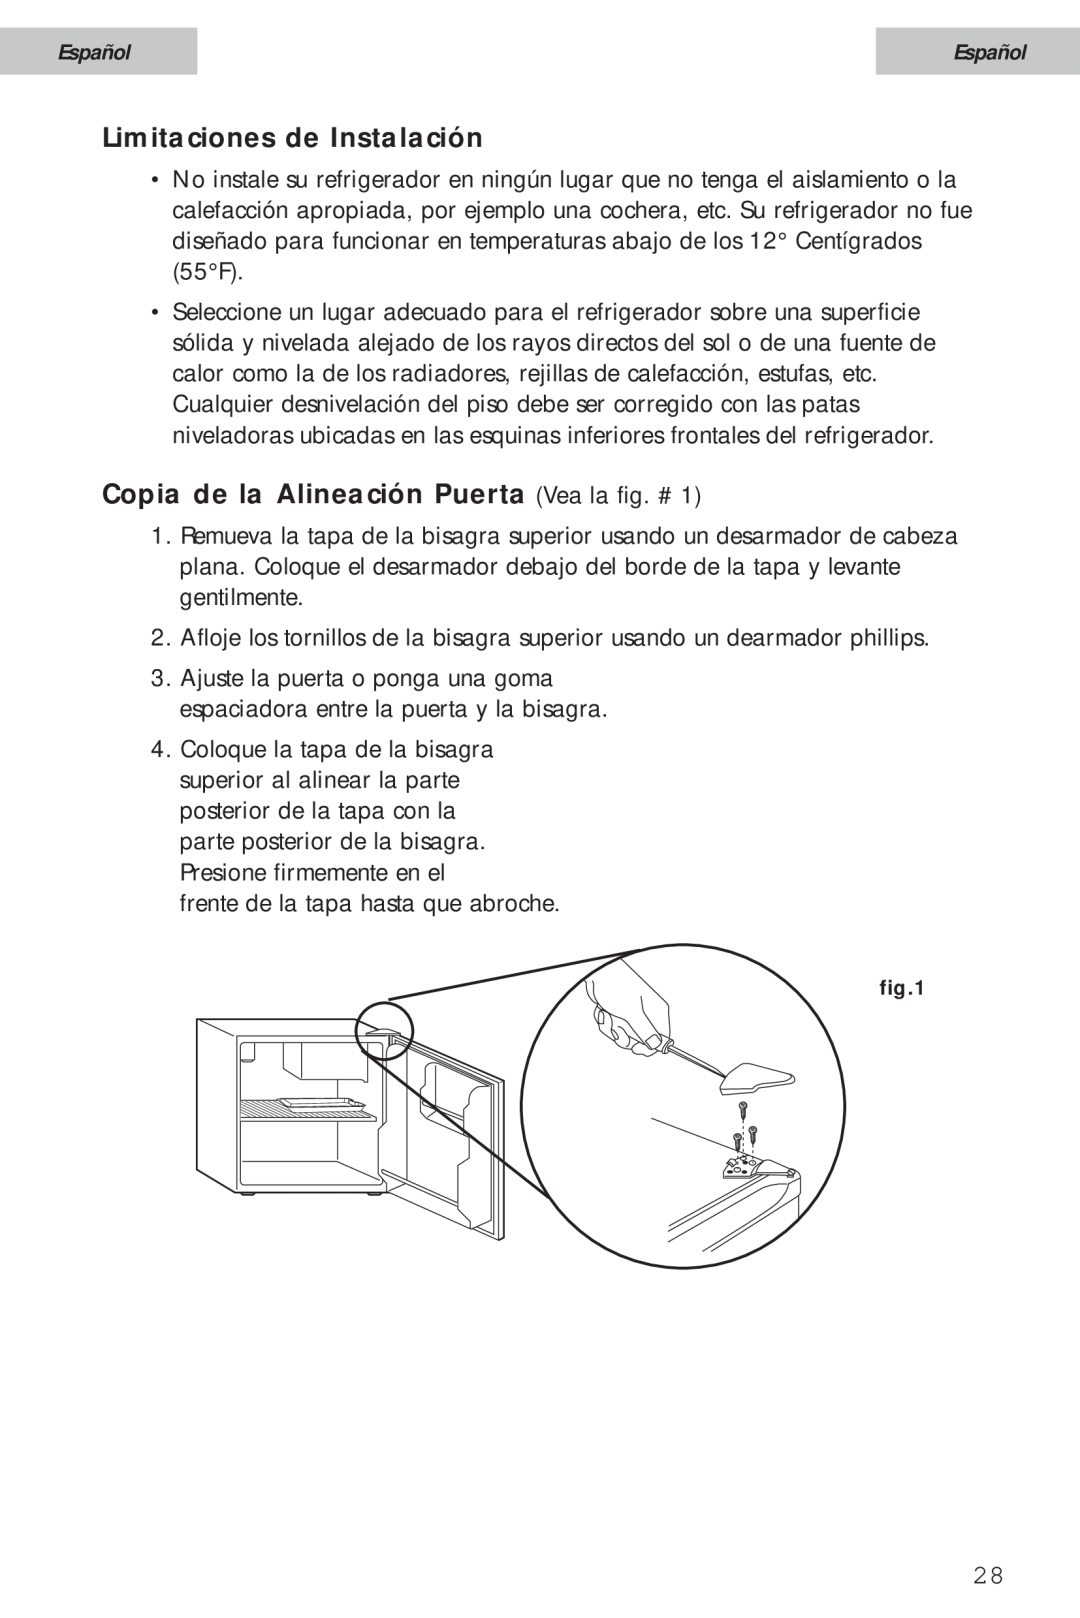 Haier HSA02WNC user manual Limitaciones de Instalación, Copia de la Alineación Puerta Vea la fig. #, Español 